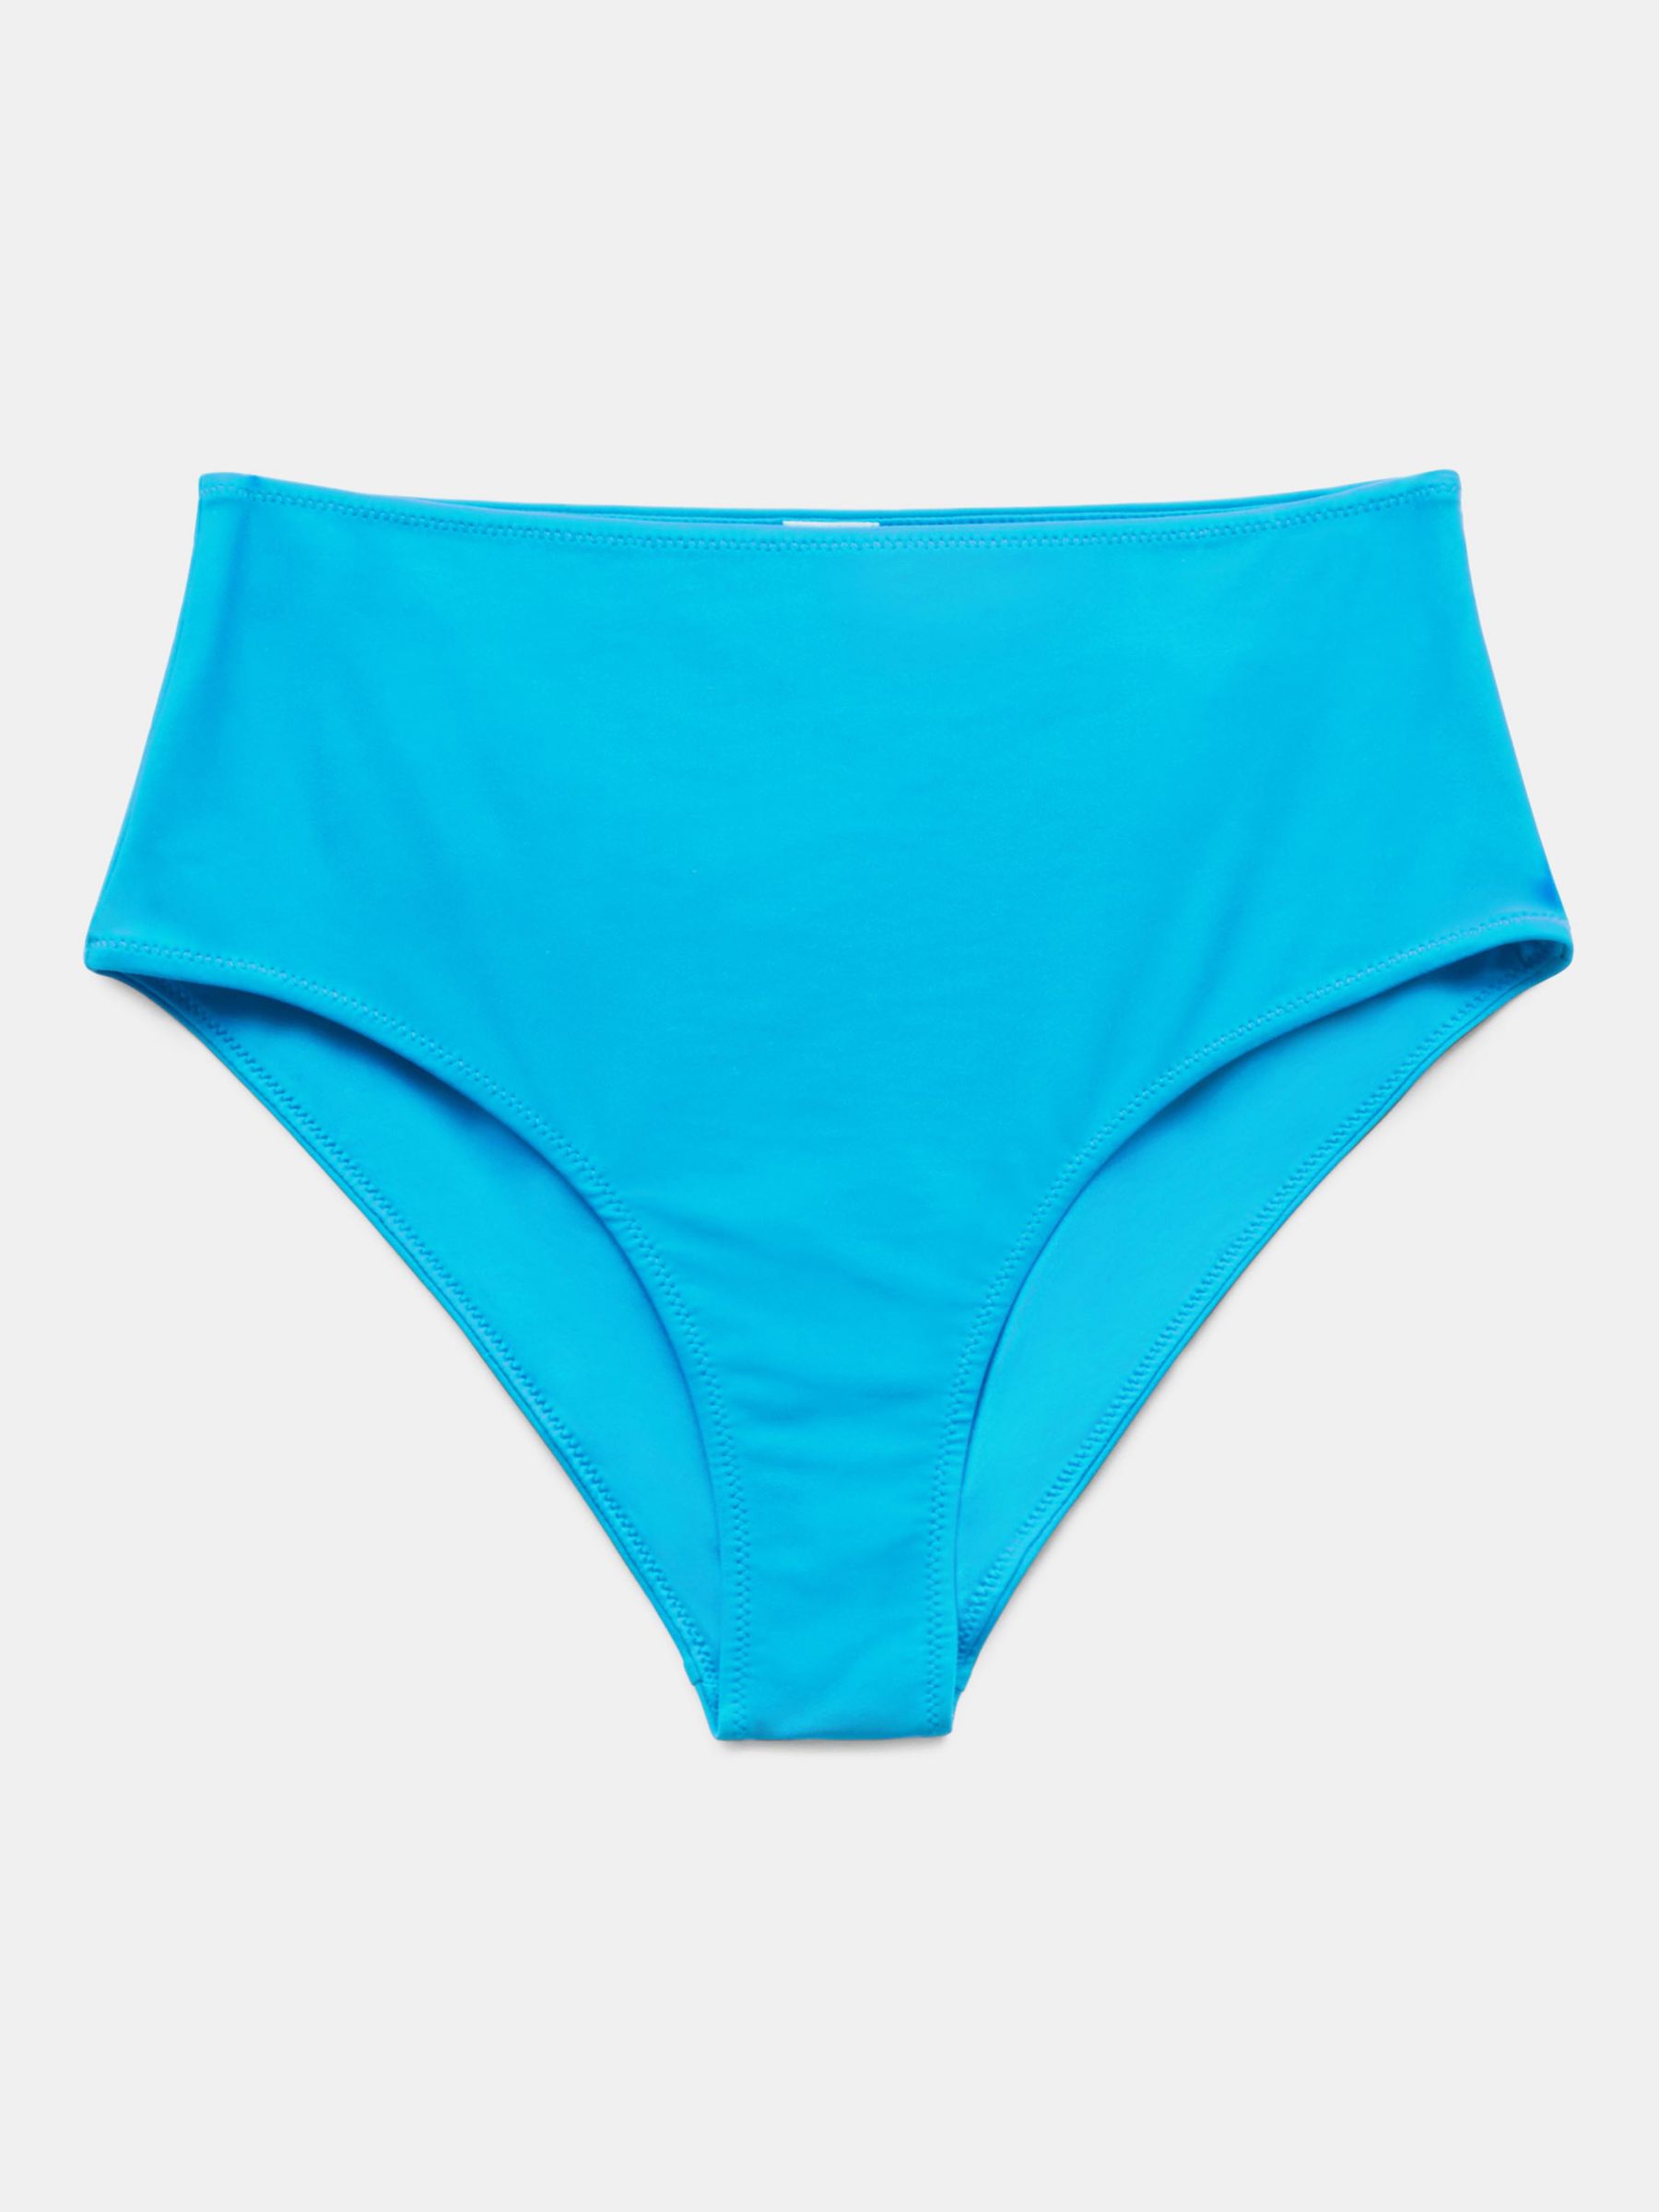 HUSH Sabrina Twist Bikini Bottoms, Turquoise, 4